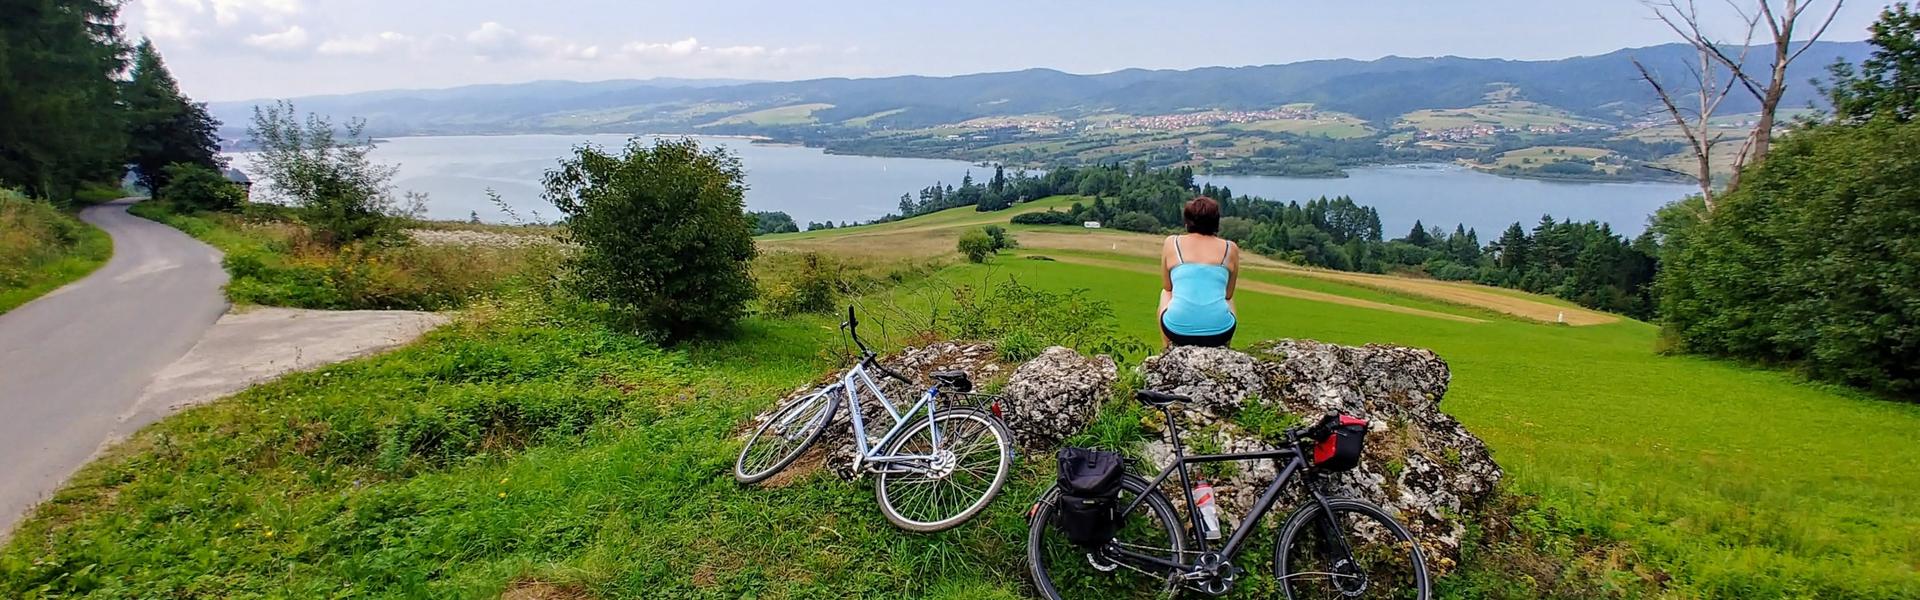 Bild: 2 Vorschläge für Radtouren rund um den See Czorsztyńskie